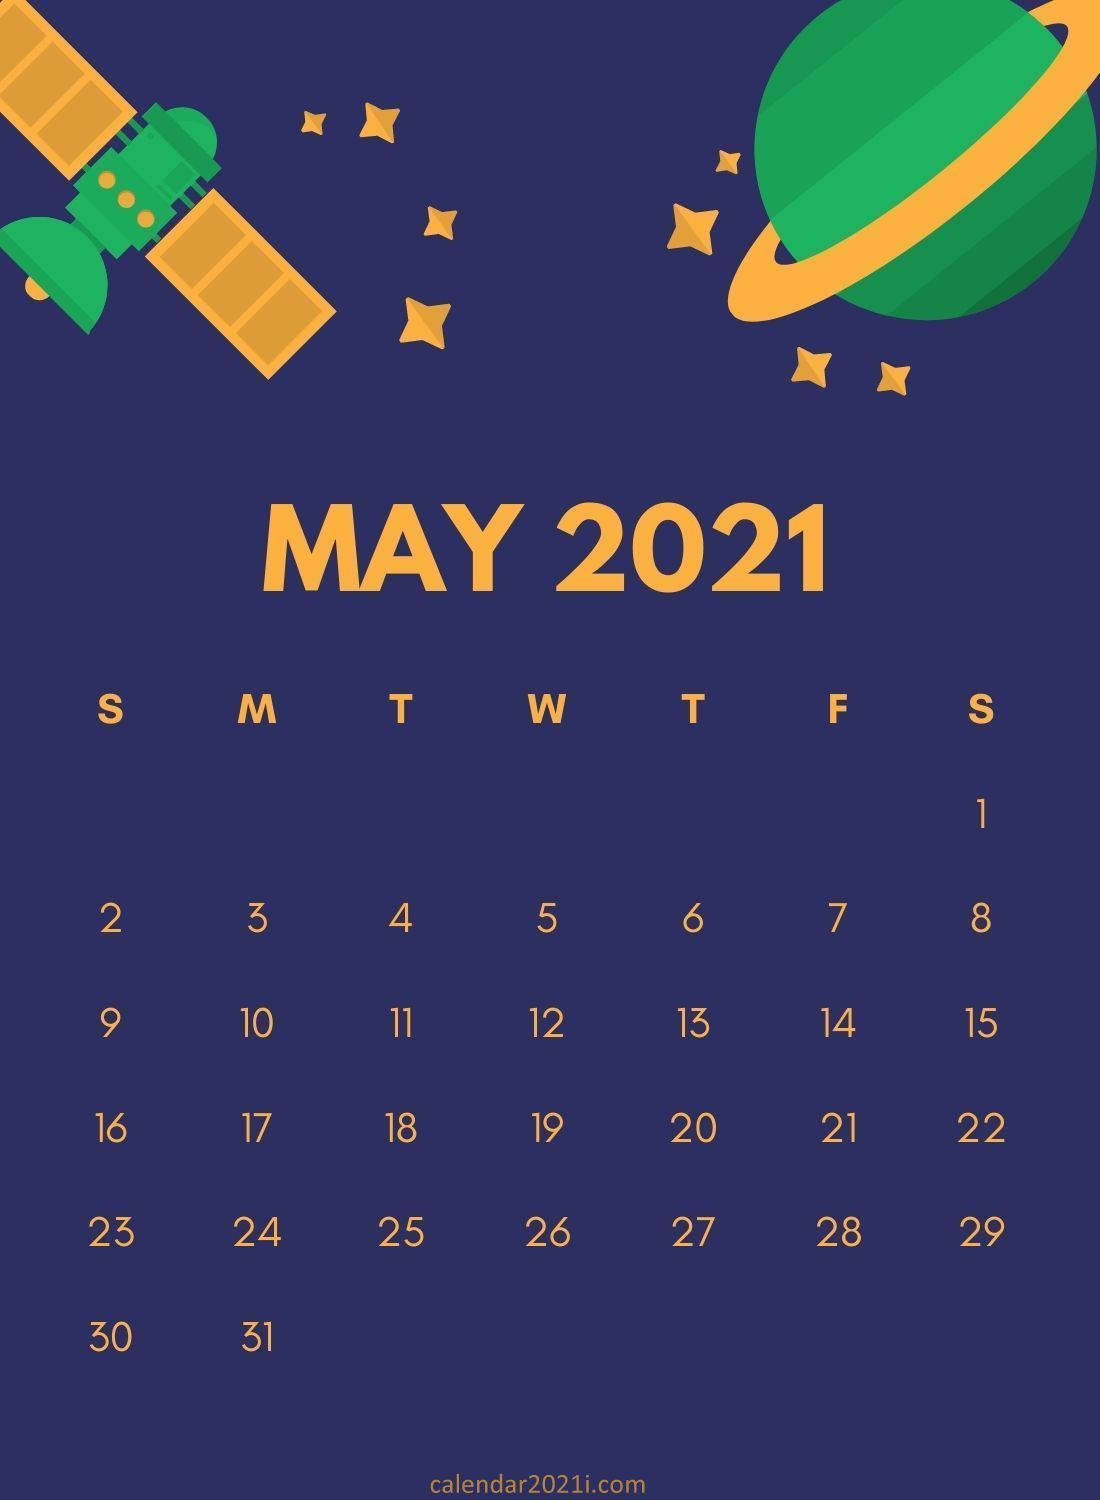 Cute Space Art May 2021 Calendar Wallpaper